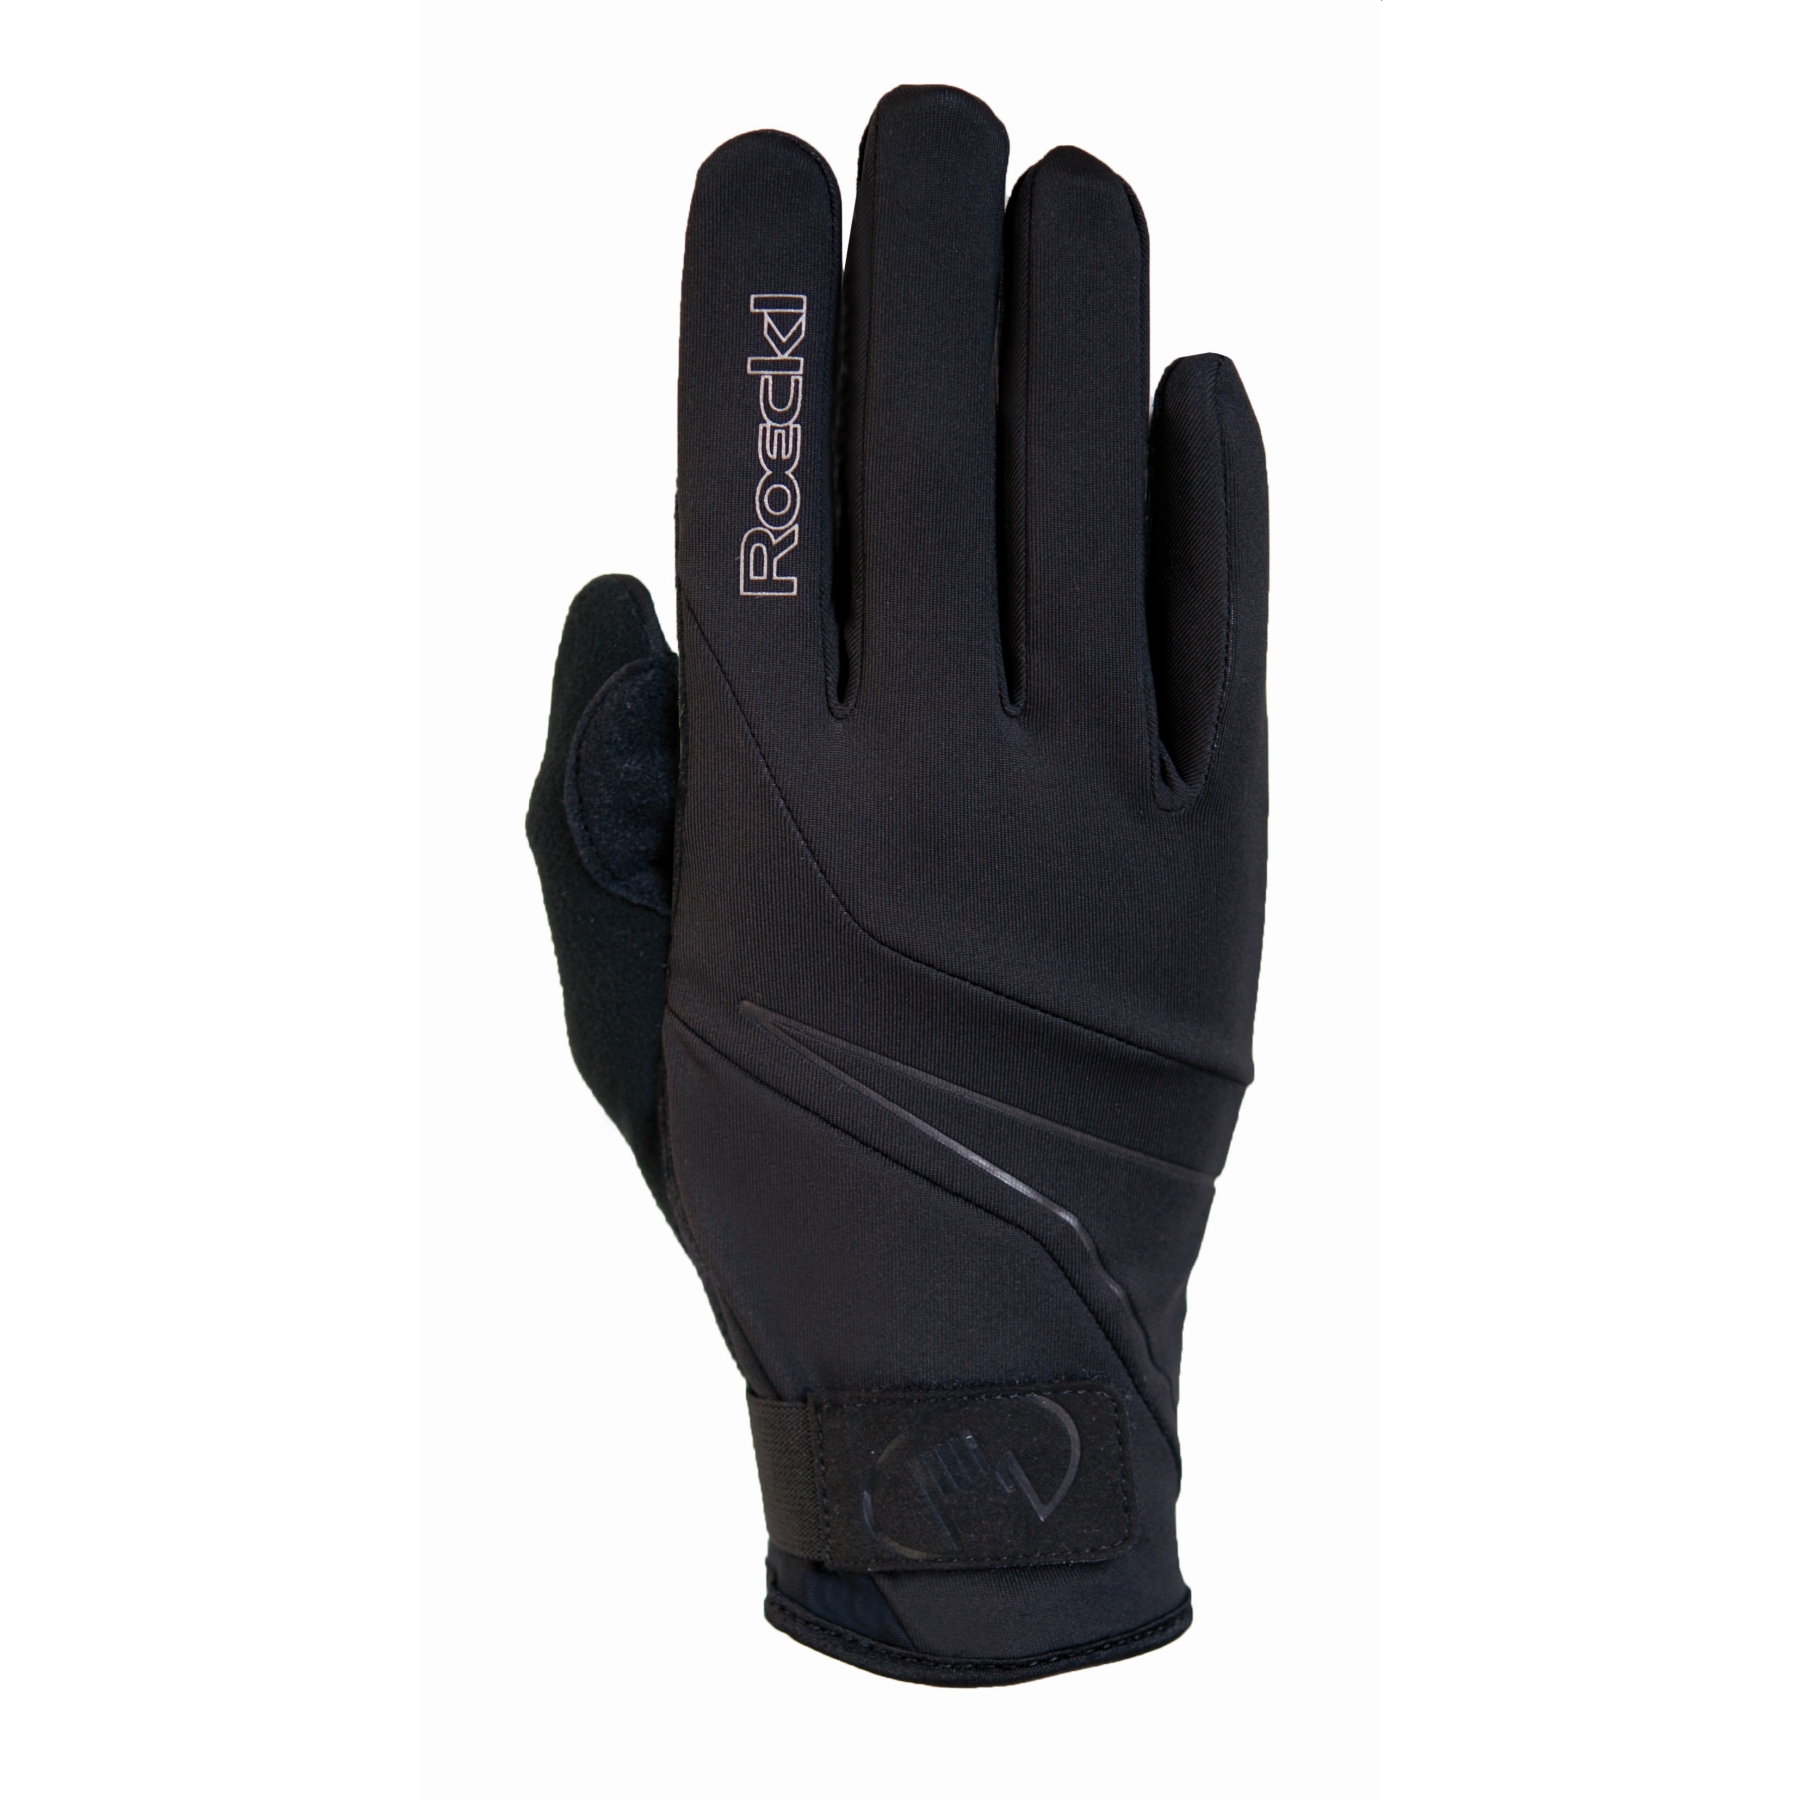 Produktbild von Roeckl Sports Lillby Winterhandschuhe - schwarz 0999